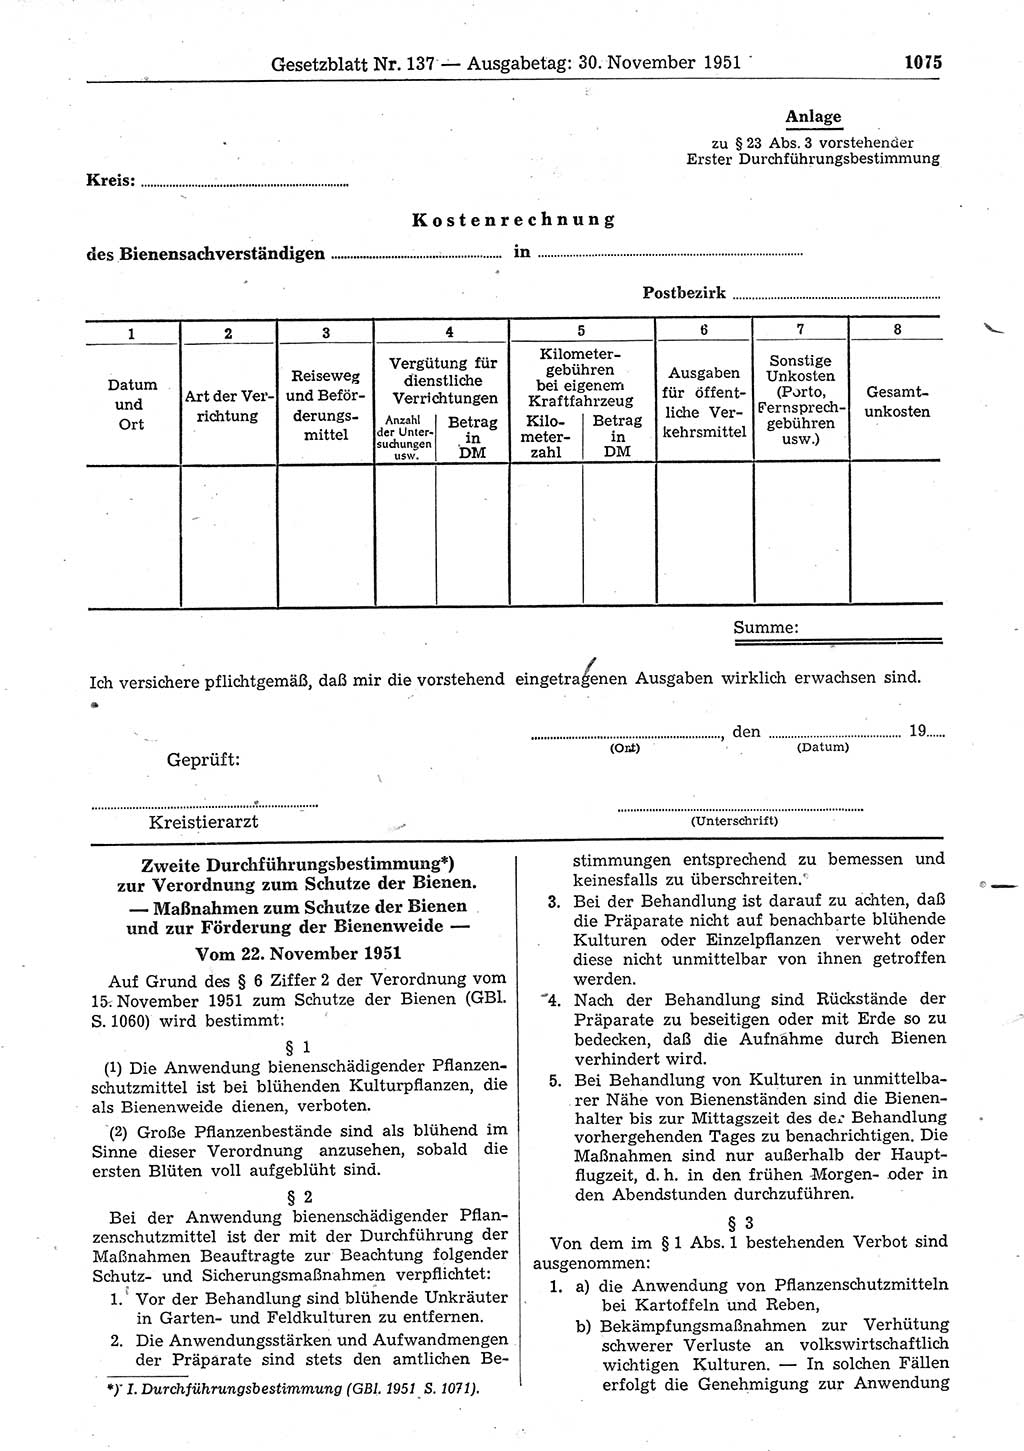 Gesetzblatt (GBl.) der Deutschen Demokratischen Republik (DDR) 1951, Seite 1075 (GBl. DDR 1951, S. 1075)